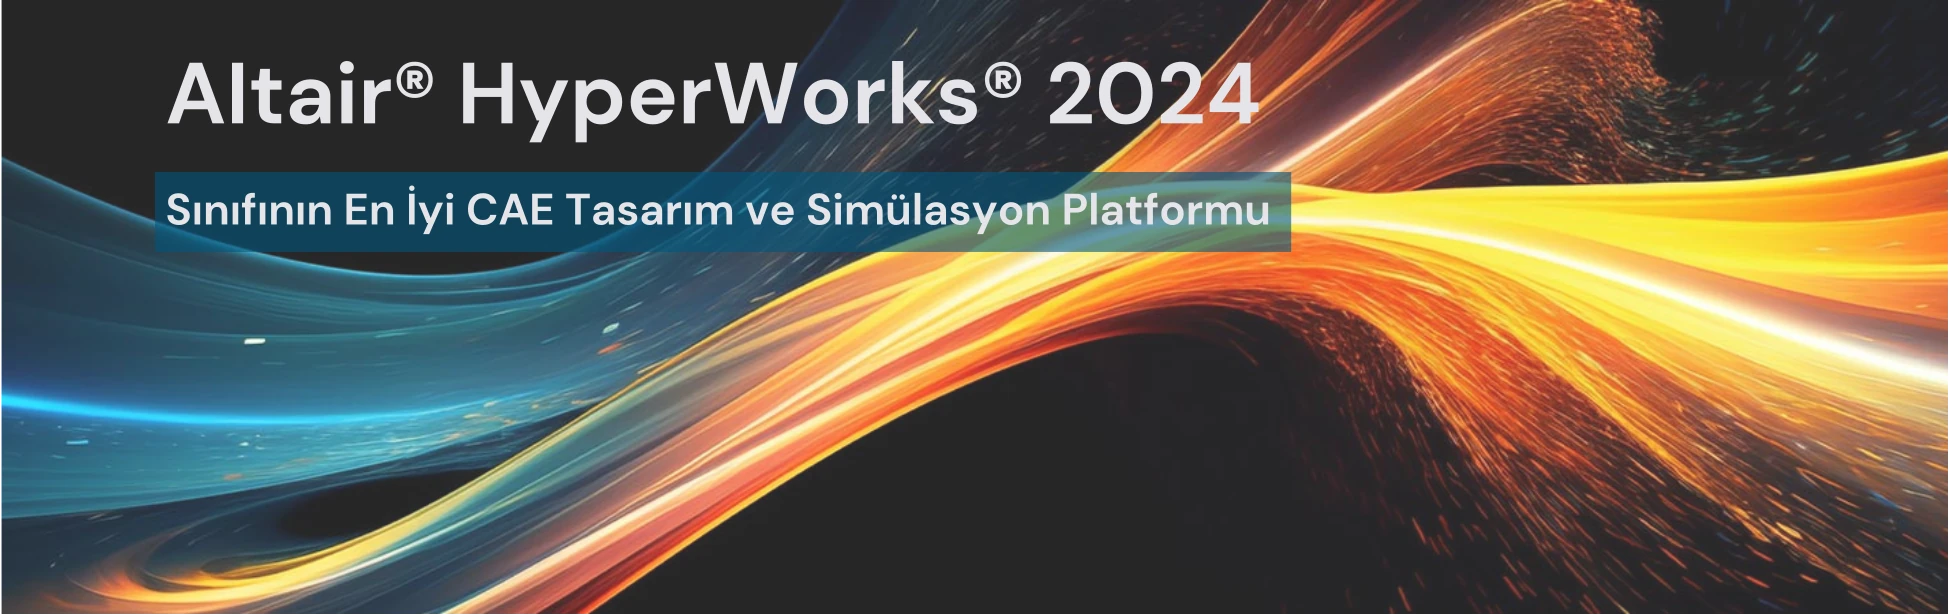 Altair HyperWorks 2024